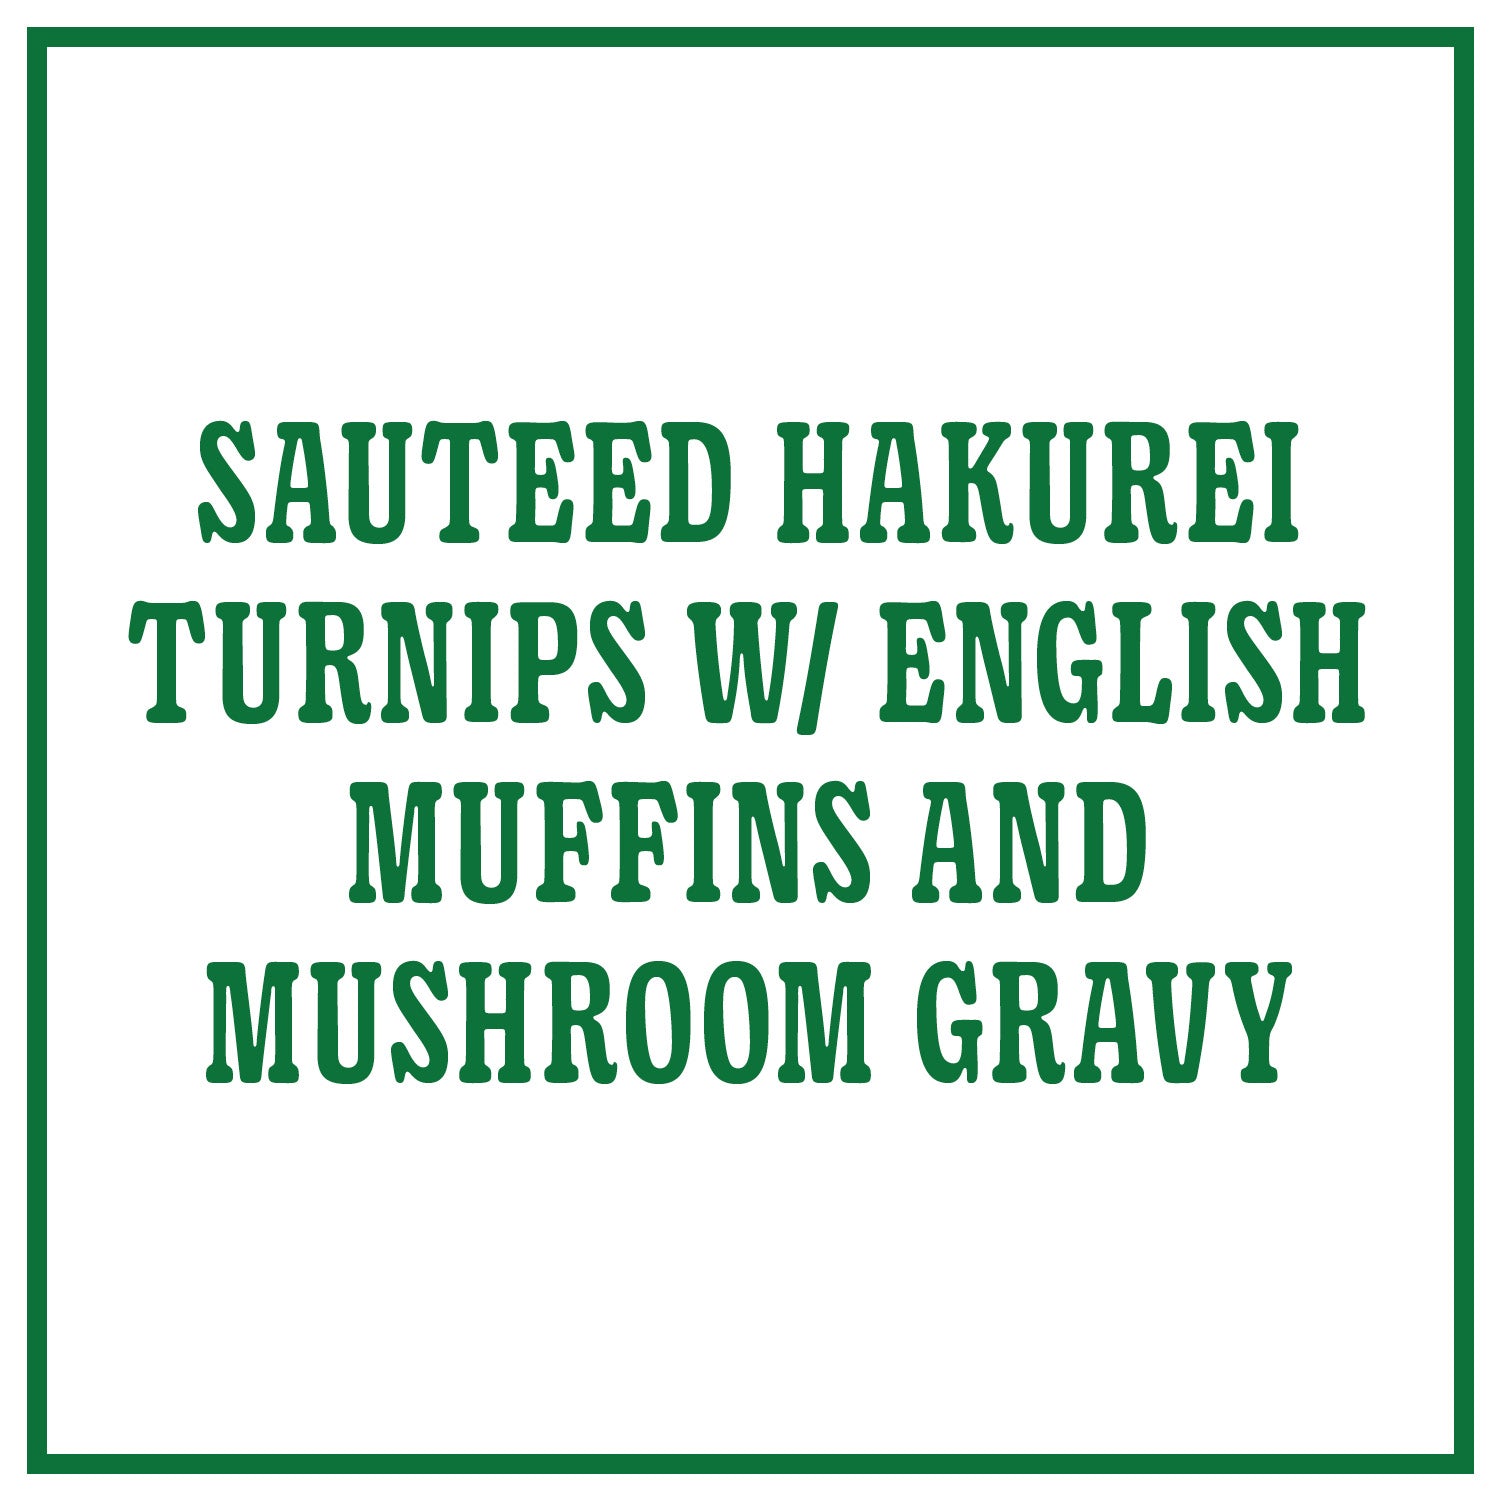 Sauteed Hakurei Turnips with English Muffins and Mushroom Gravy